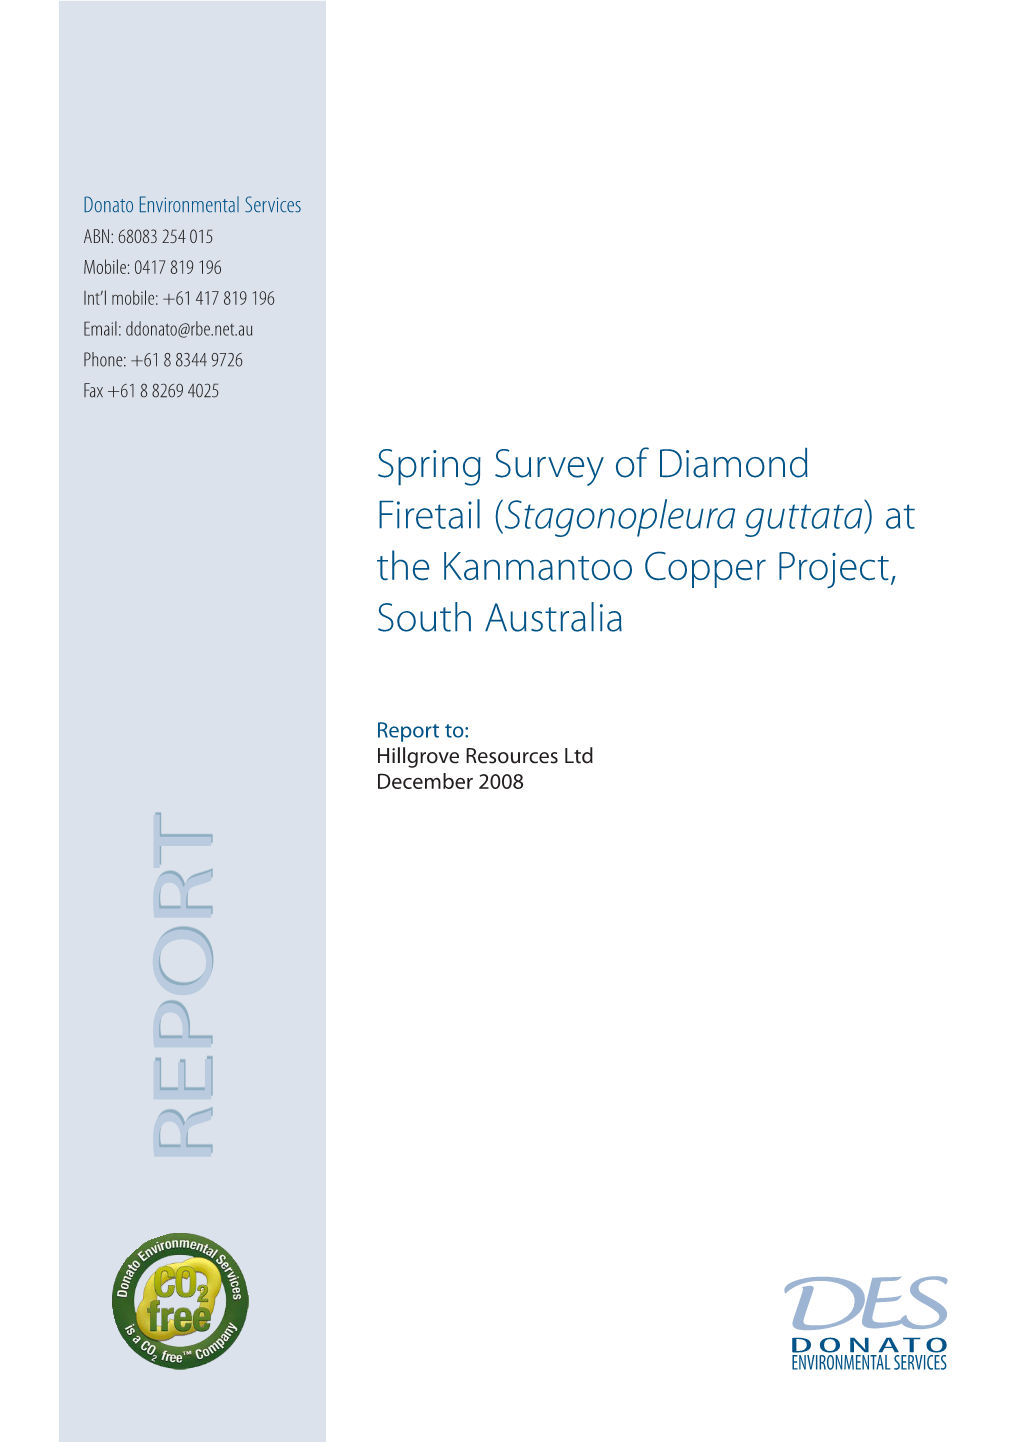 Diamond Firetail Survey 2009